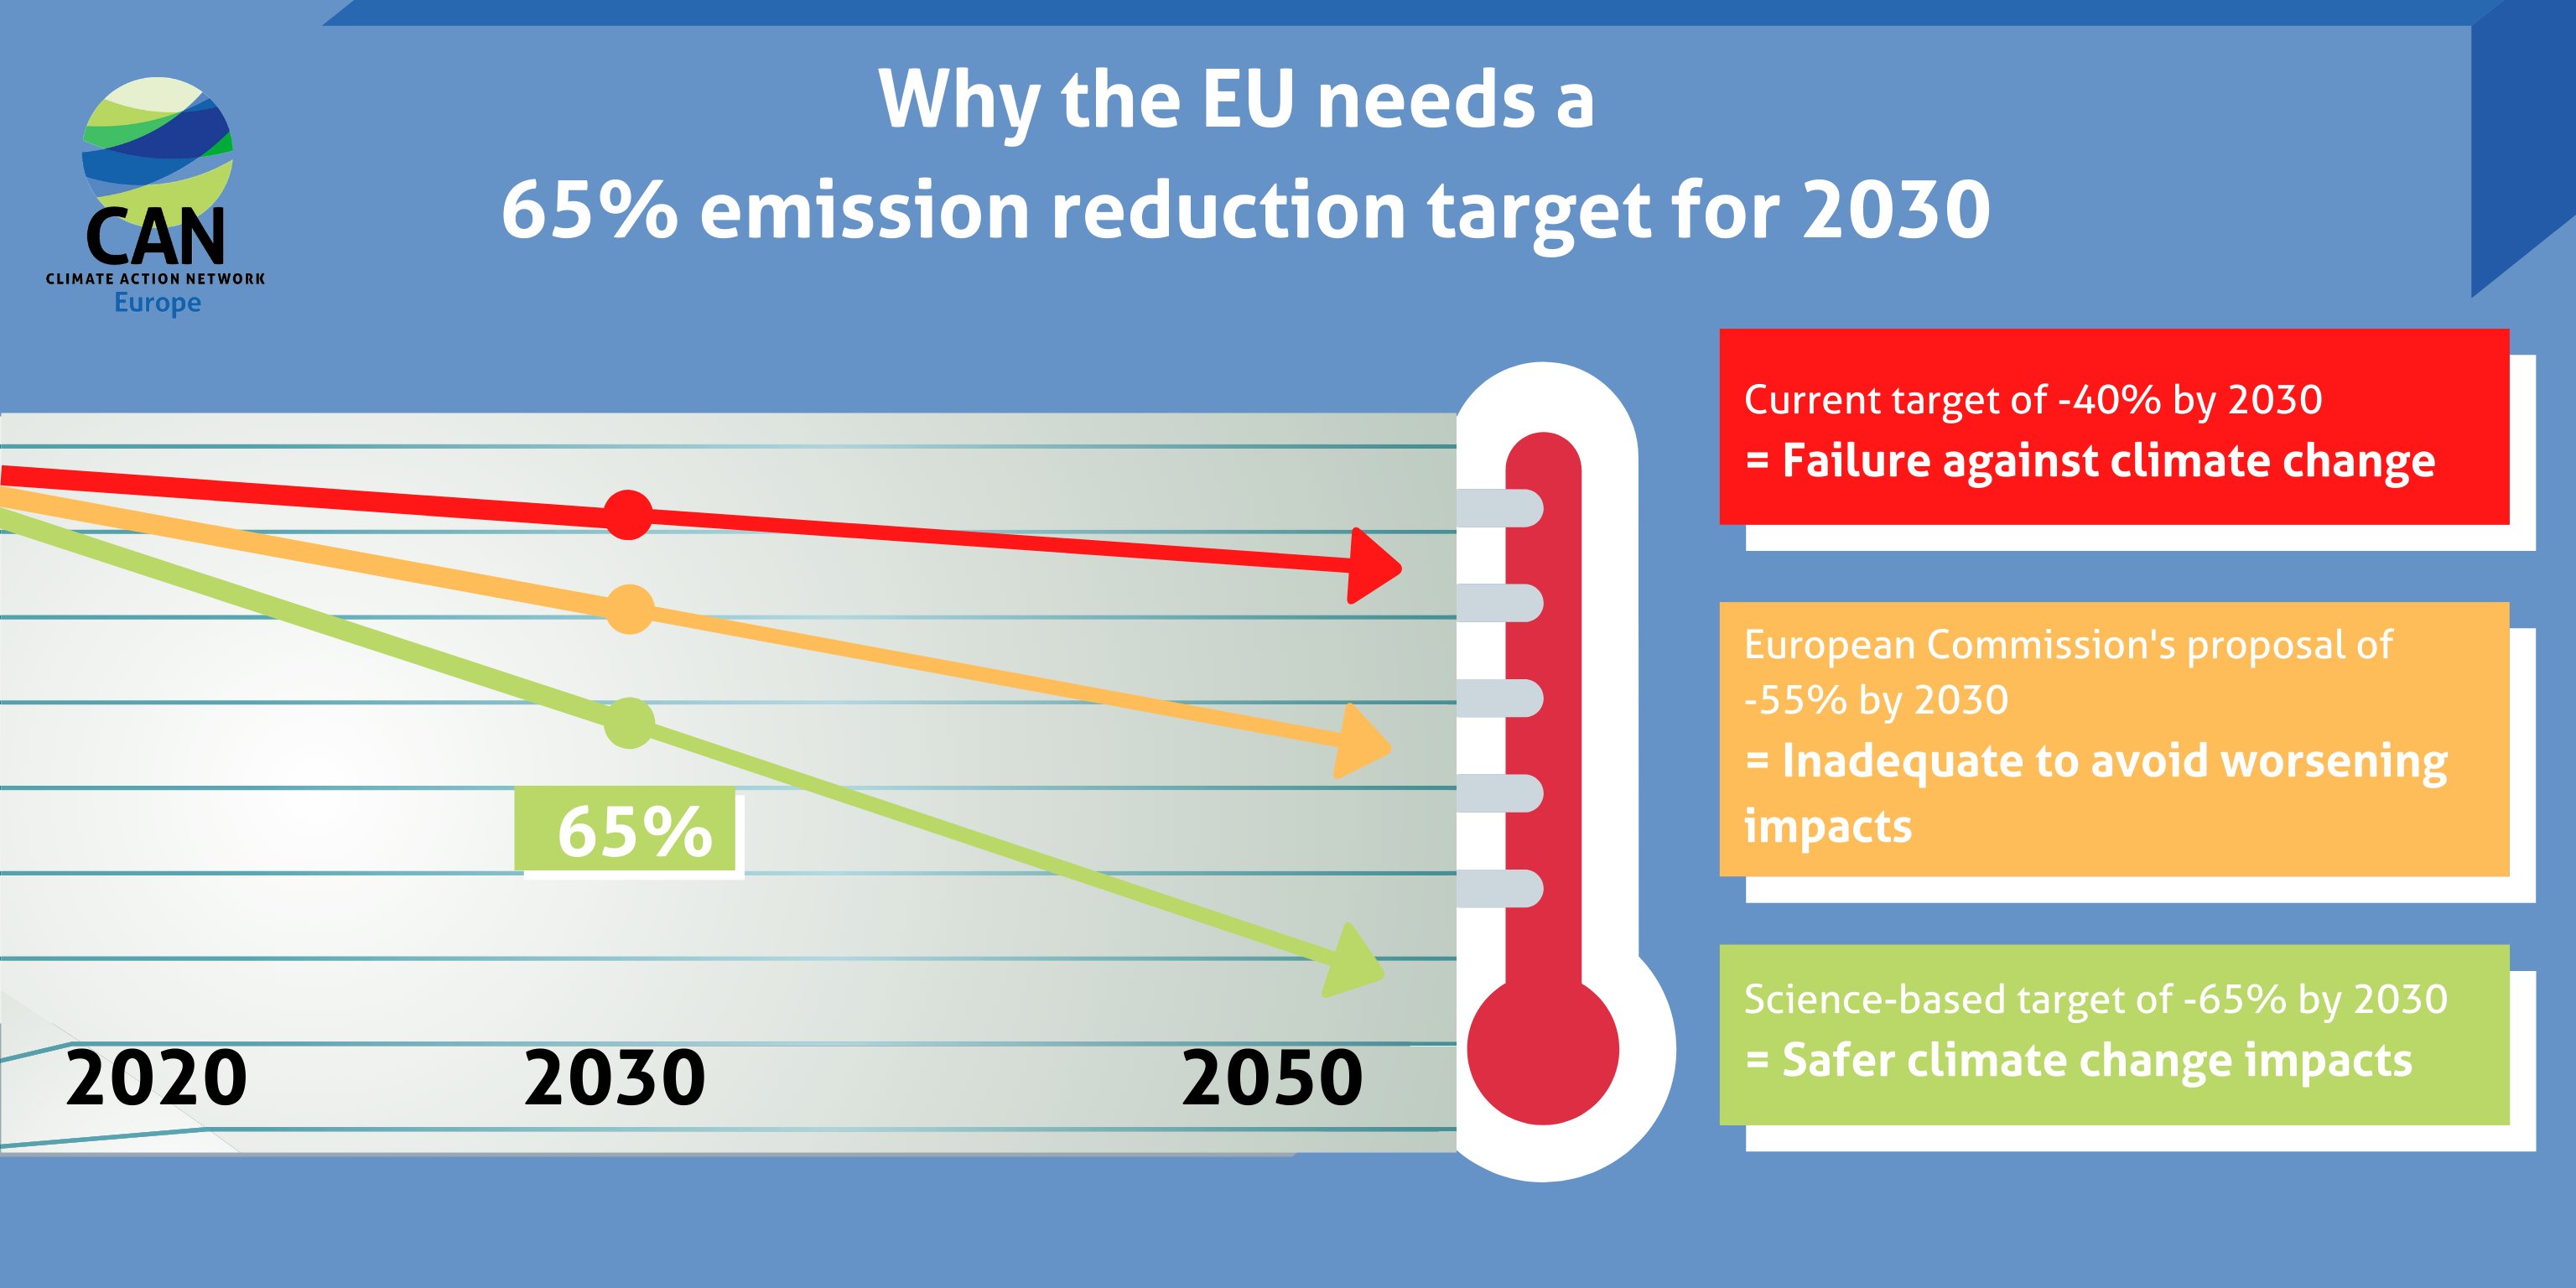 Kuvaaja, joka perustelee miksi EU:n pitäisi vähentää 65% päästöistään vuoteen 2030 mennessä.